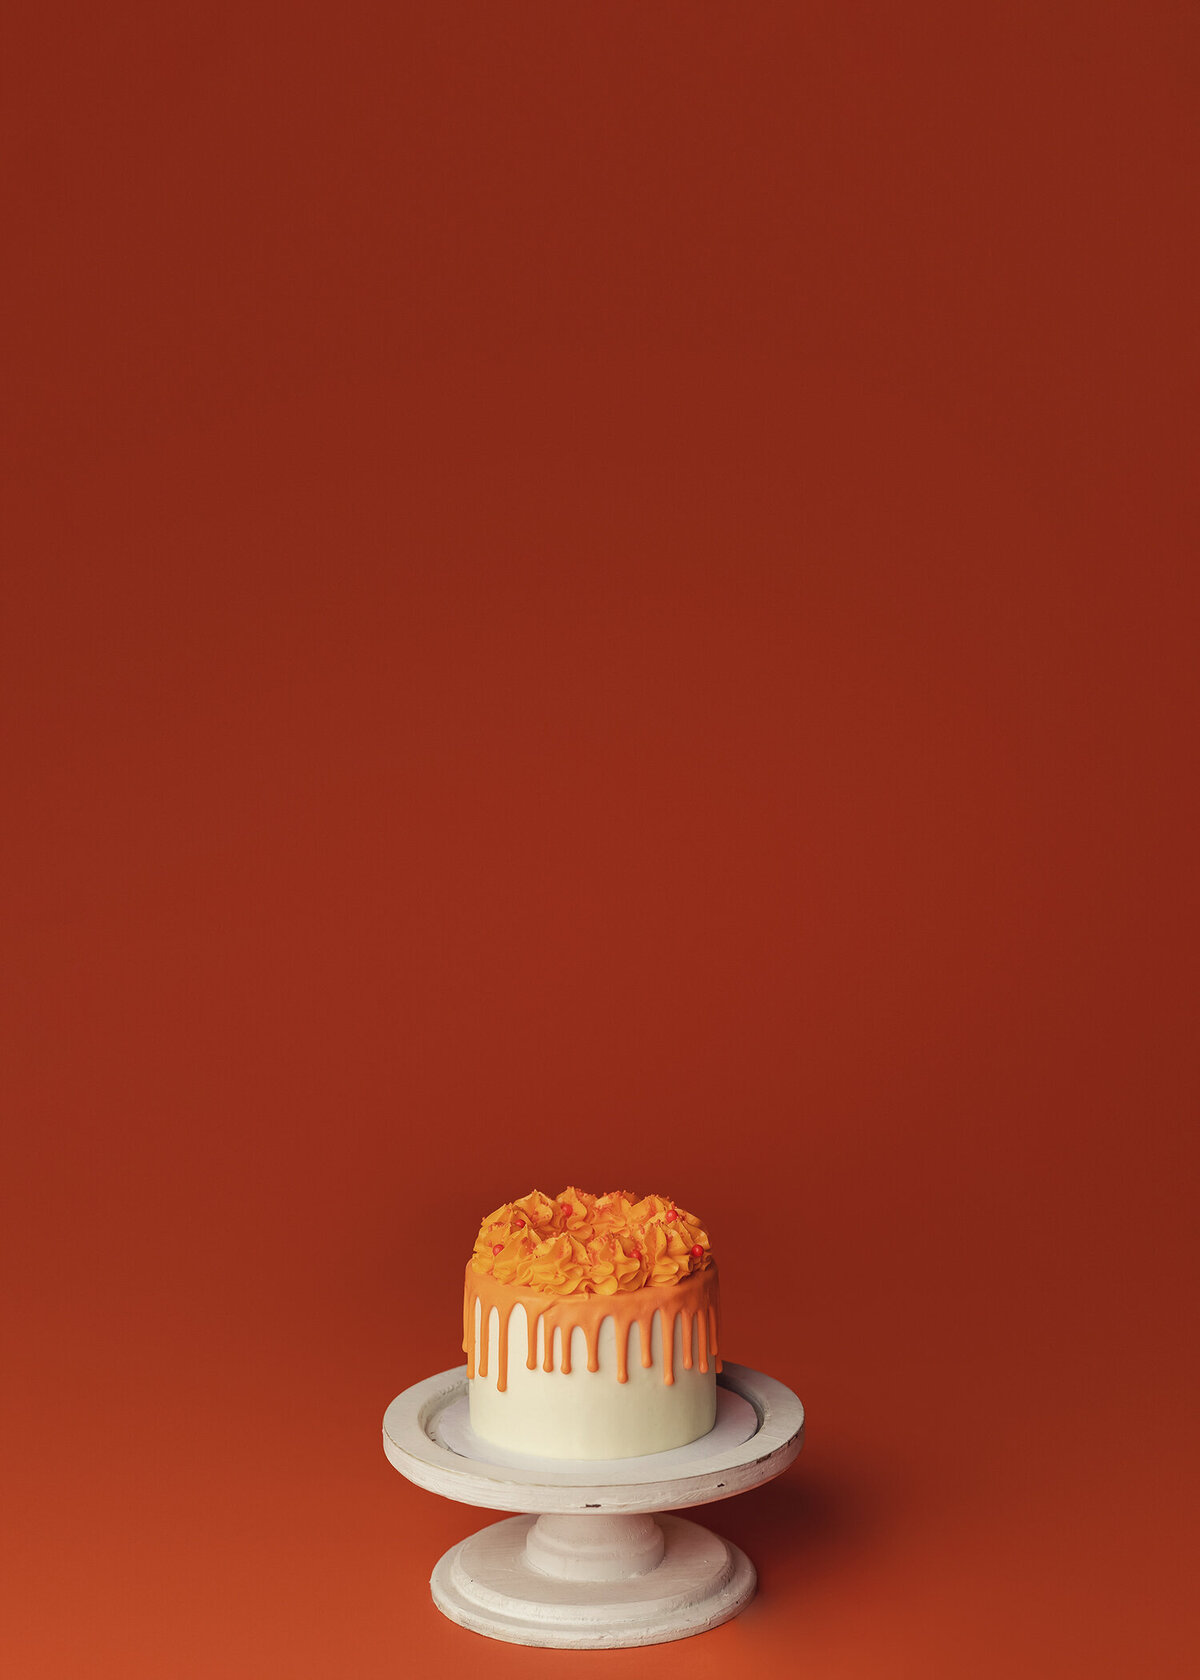 orange cake on orange backdrop